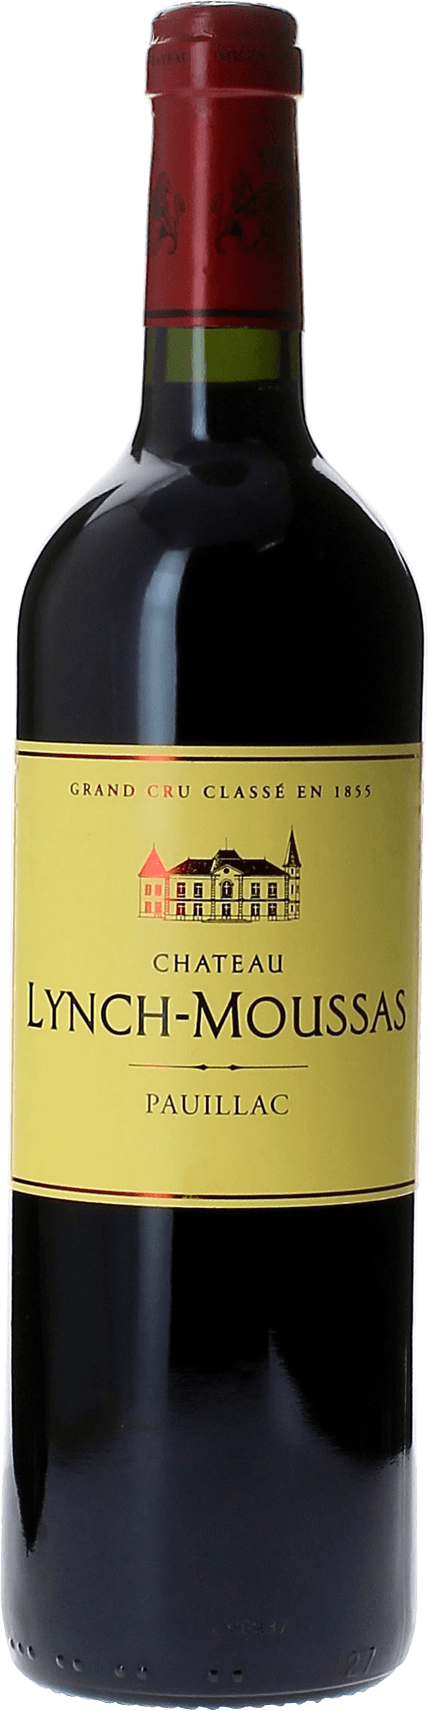 Lynch moussas 2015 5 me Grand cru class Pauillac, Bordeaux rouge